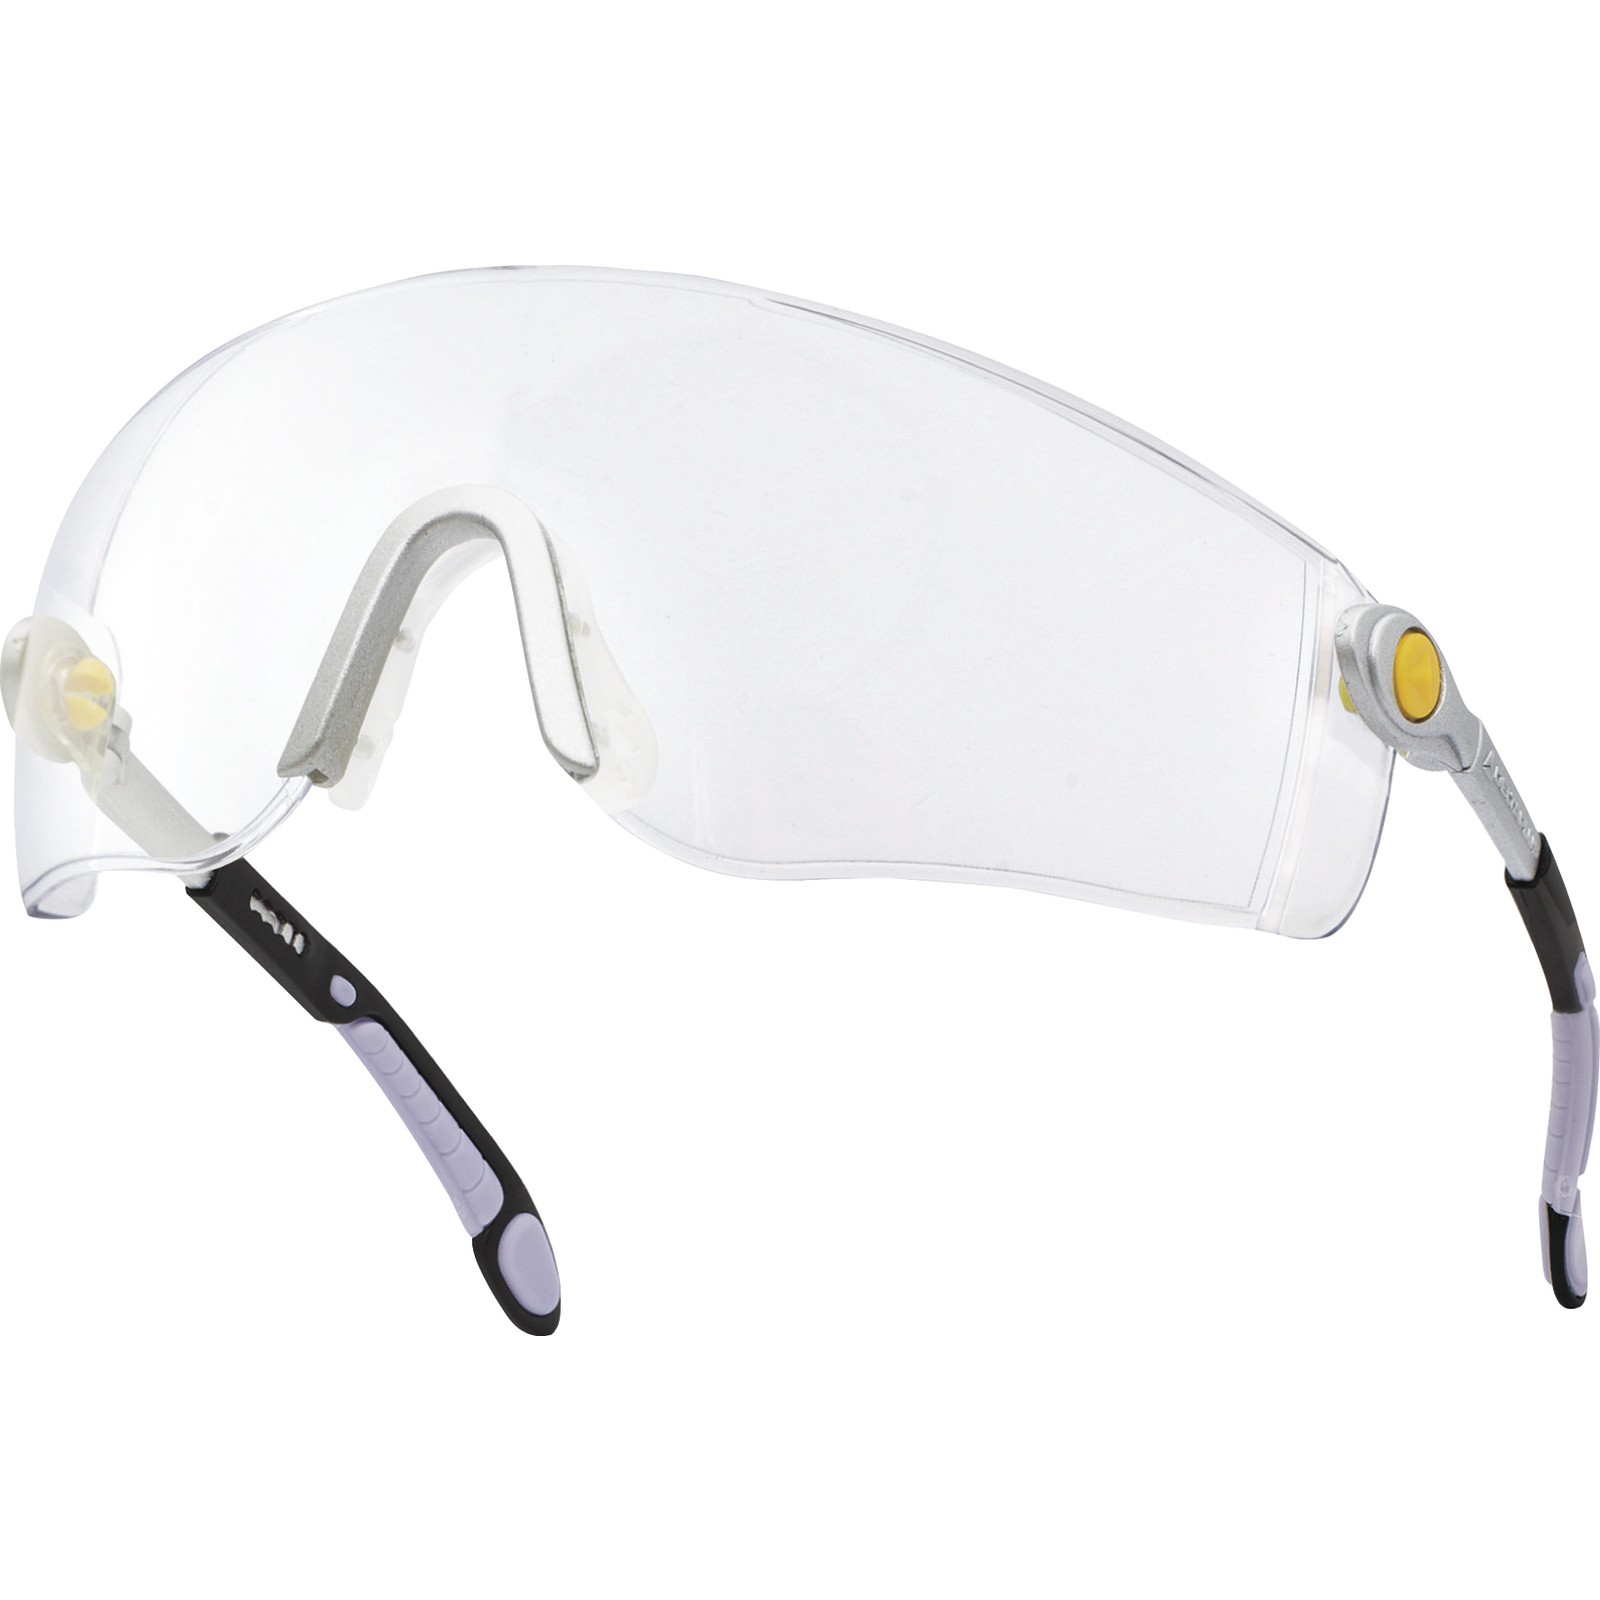 DeltaPlus Очки LIPARI2 CLEAR открытые защитные с боковой защитой очки защитные для мастера регулируемые дужки